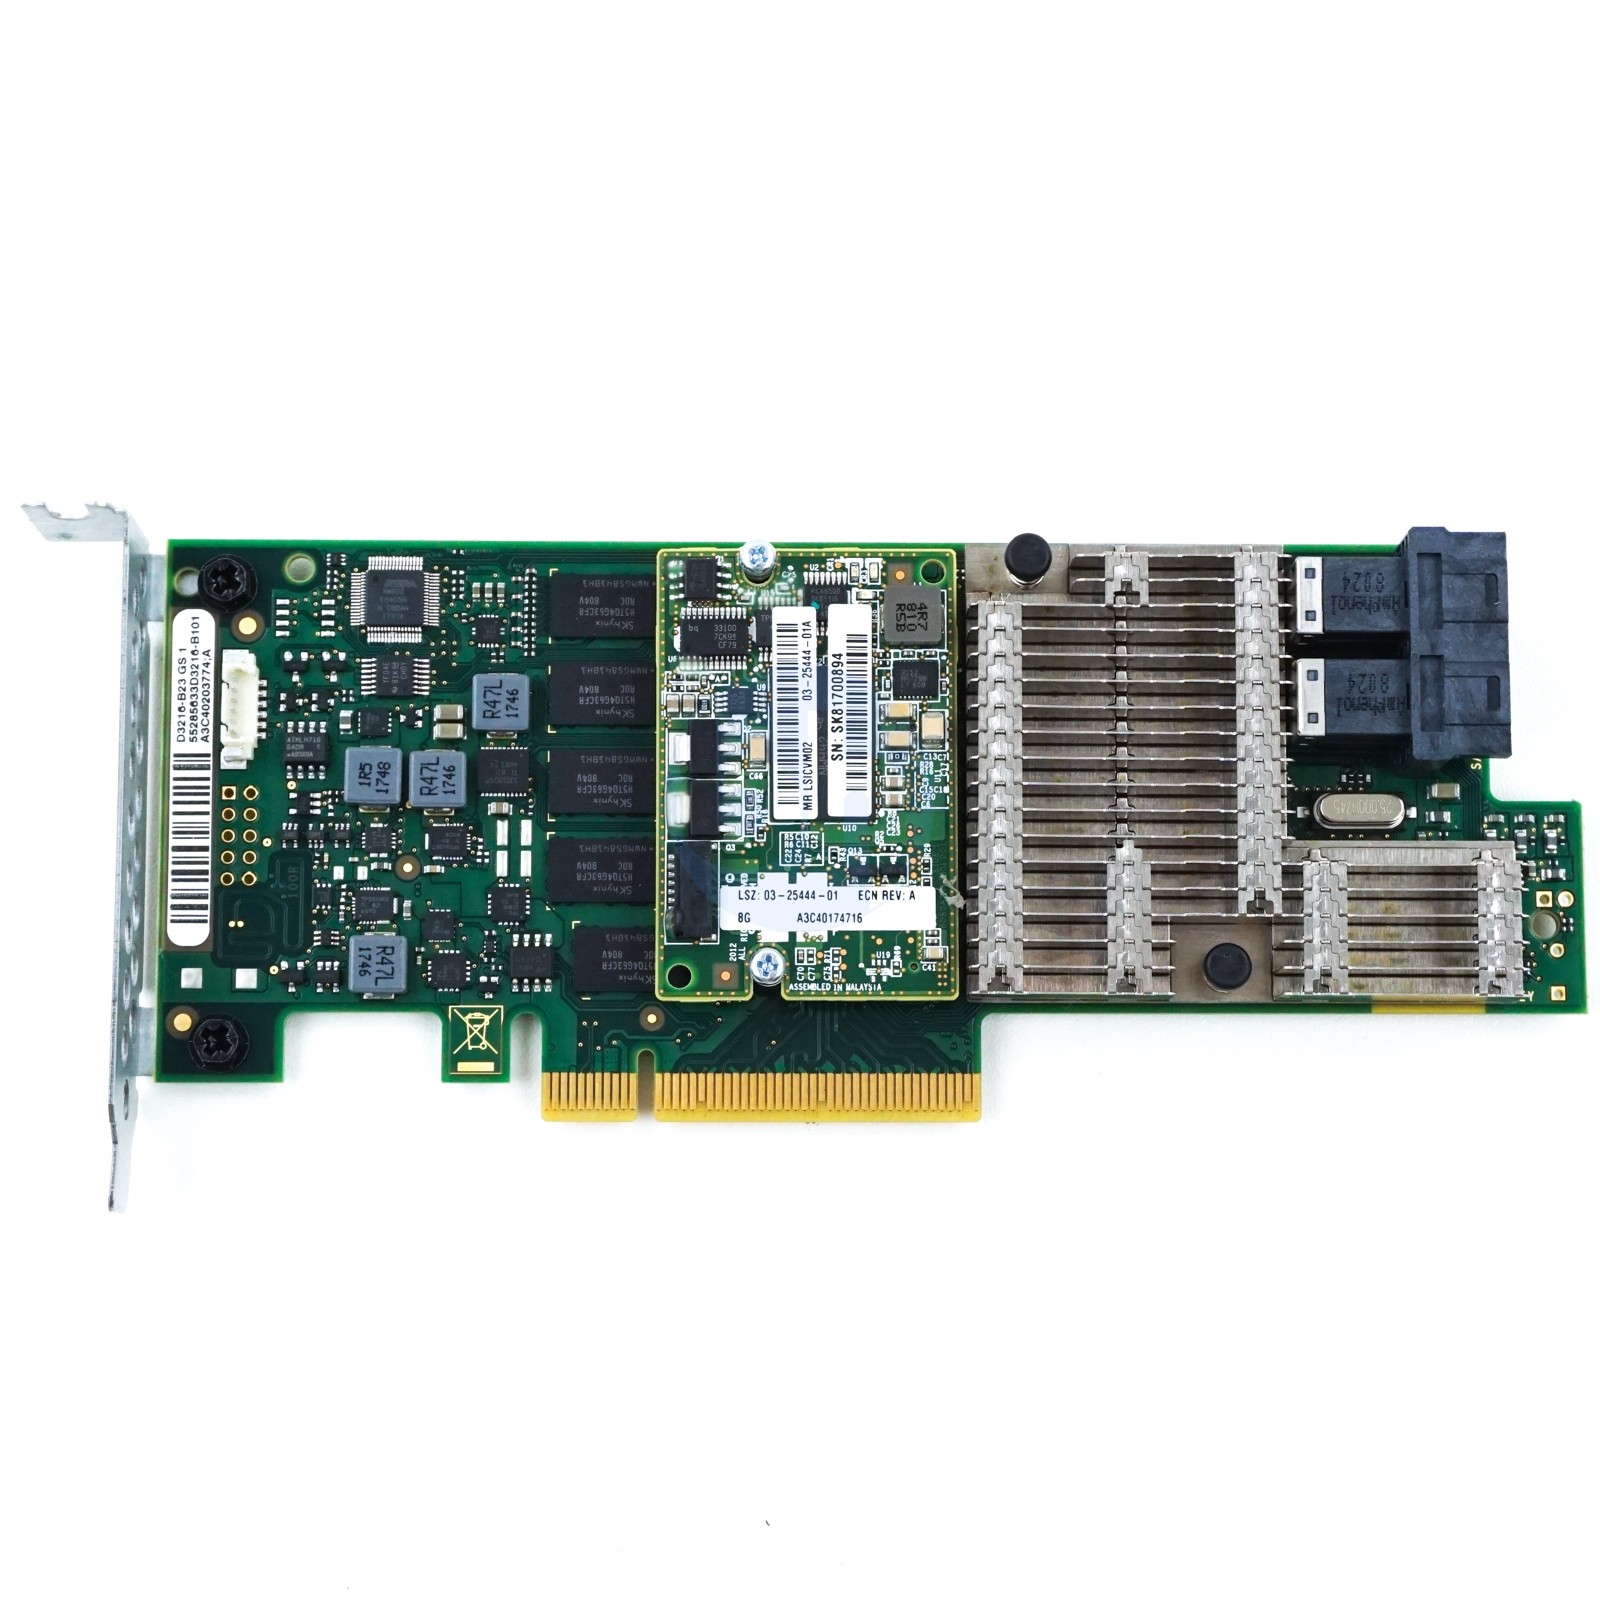 Fujitsu PRAID EP420i 2GB - LP PCIe-x8 SAS 12Gbps RAID Controller